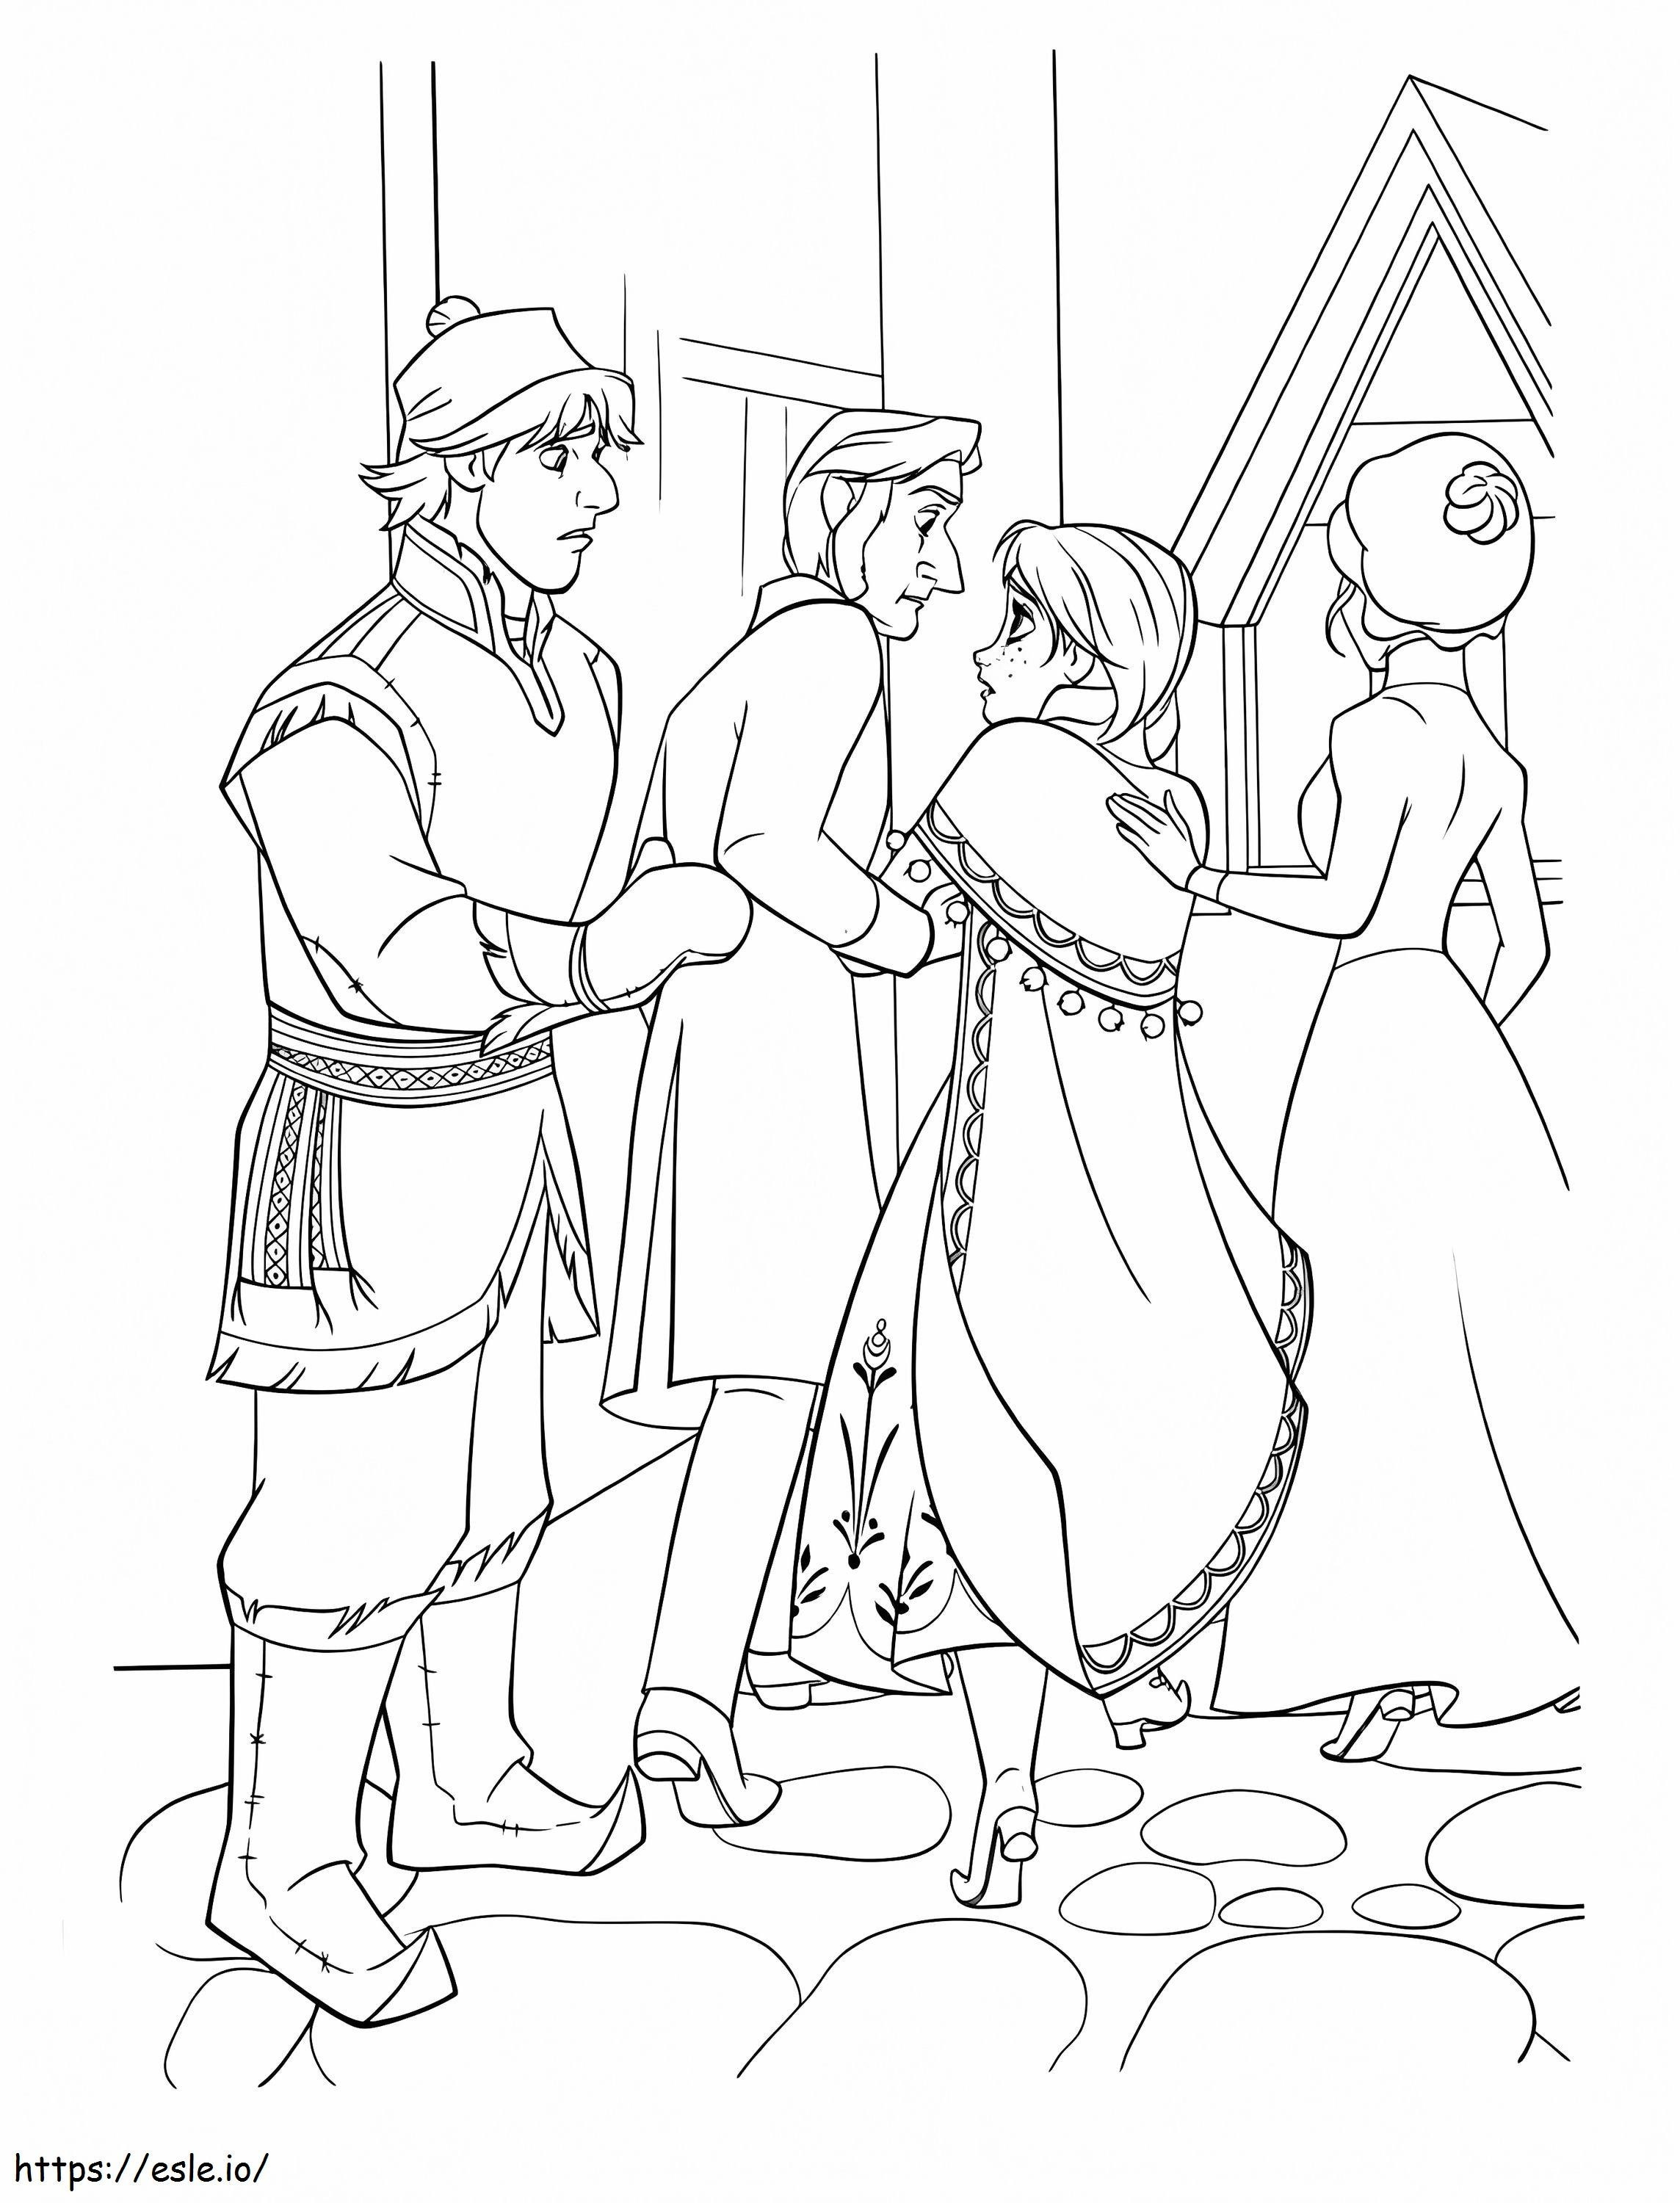 Kristoff ritorna al castello con Anna da colorare